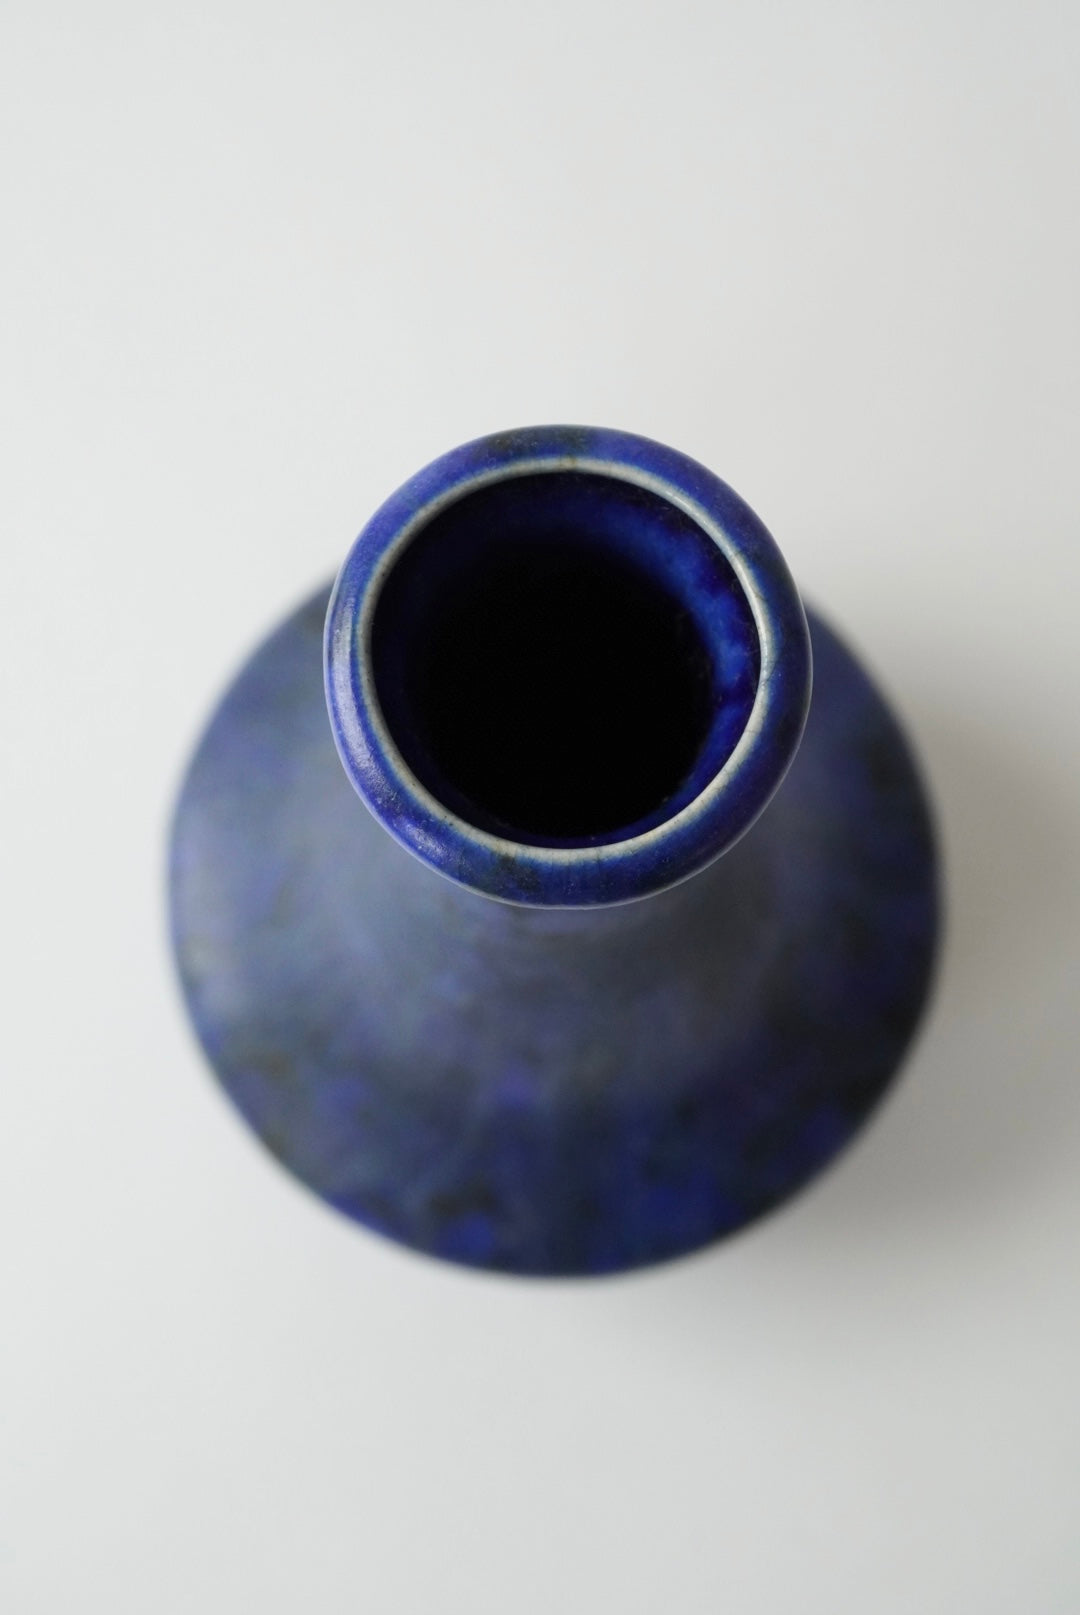 Marbled Blue Vase / Pop-up item @LUMINE SHINJUKU2